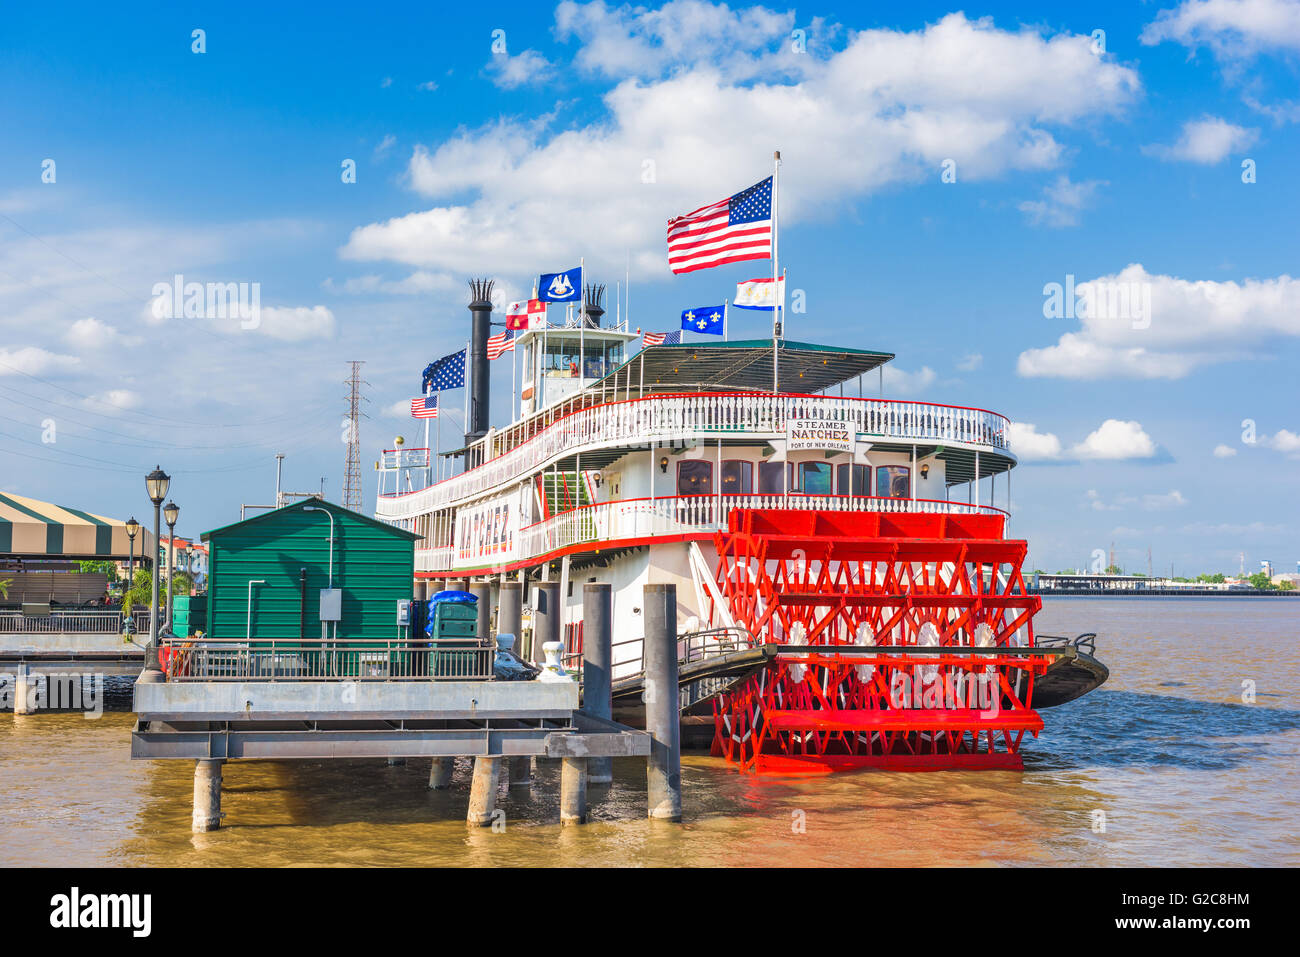 NEW ORLEANS, LOUISIANA - 10. Mai 2016: Das Dampfschiff Natchez am Mississippi River. Stockfoto